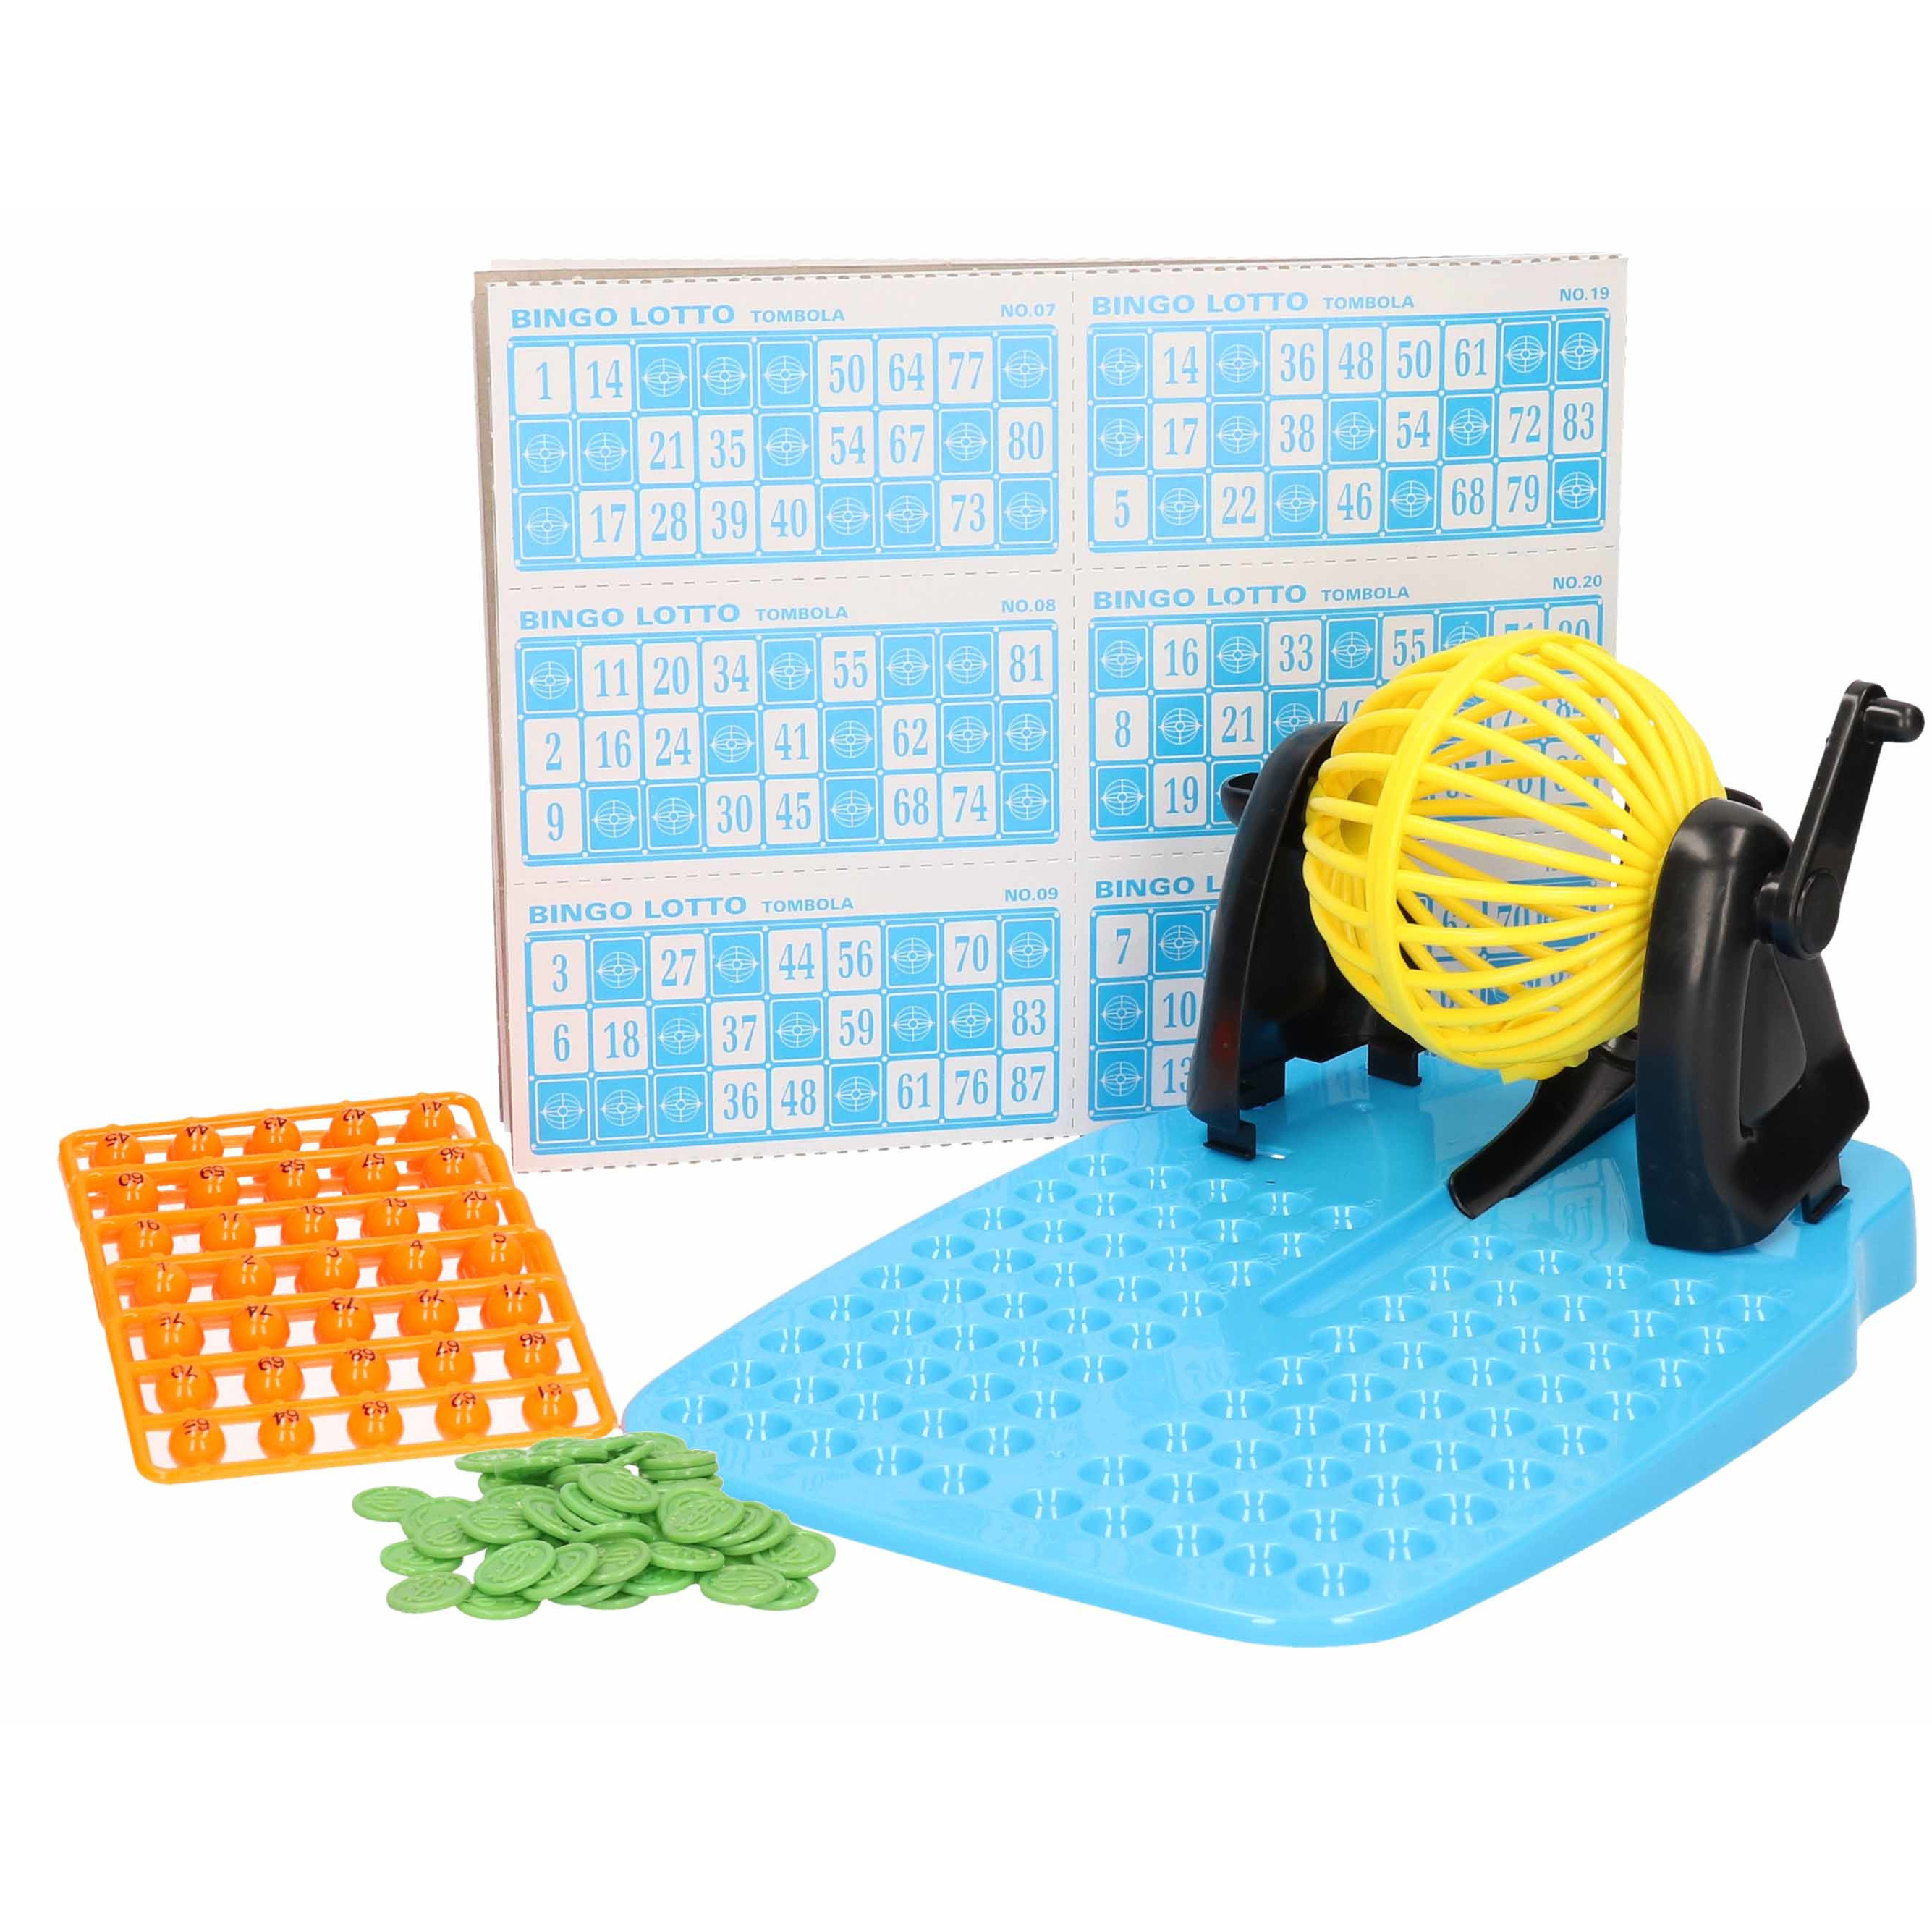 Bingo spel gekleurd/geel complete set nummers 1-90 met molen en bingokaarten